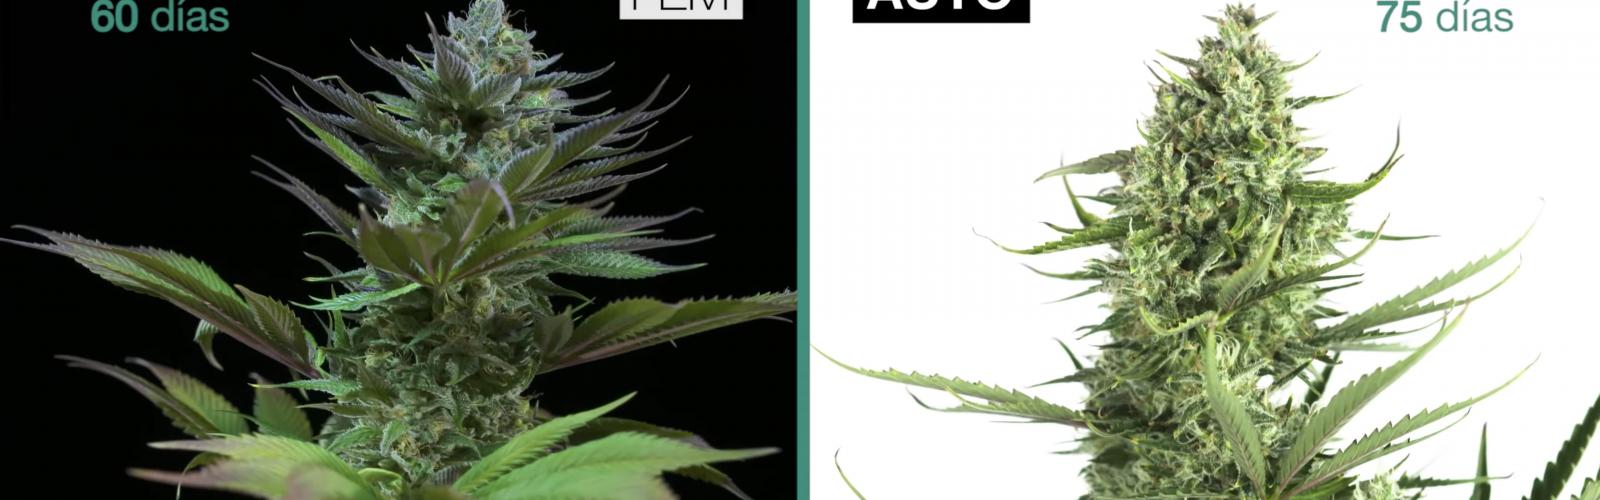 Cannabis  Semillas feminizadas vs. Semillas autoflorecientes - El Salto -  Edición General